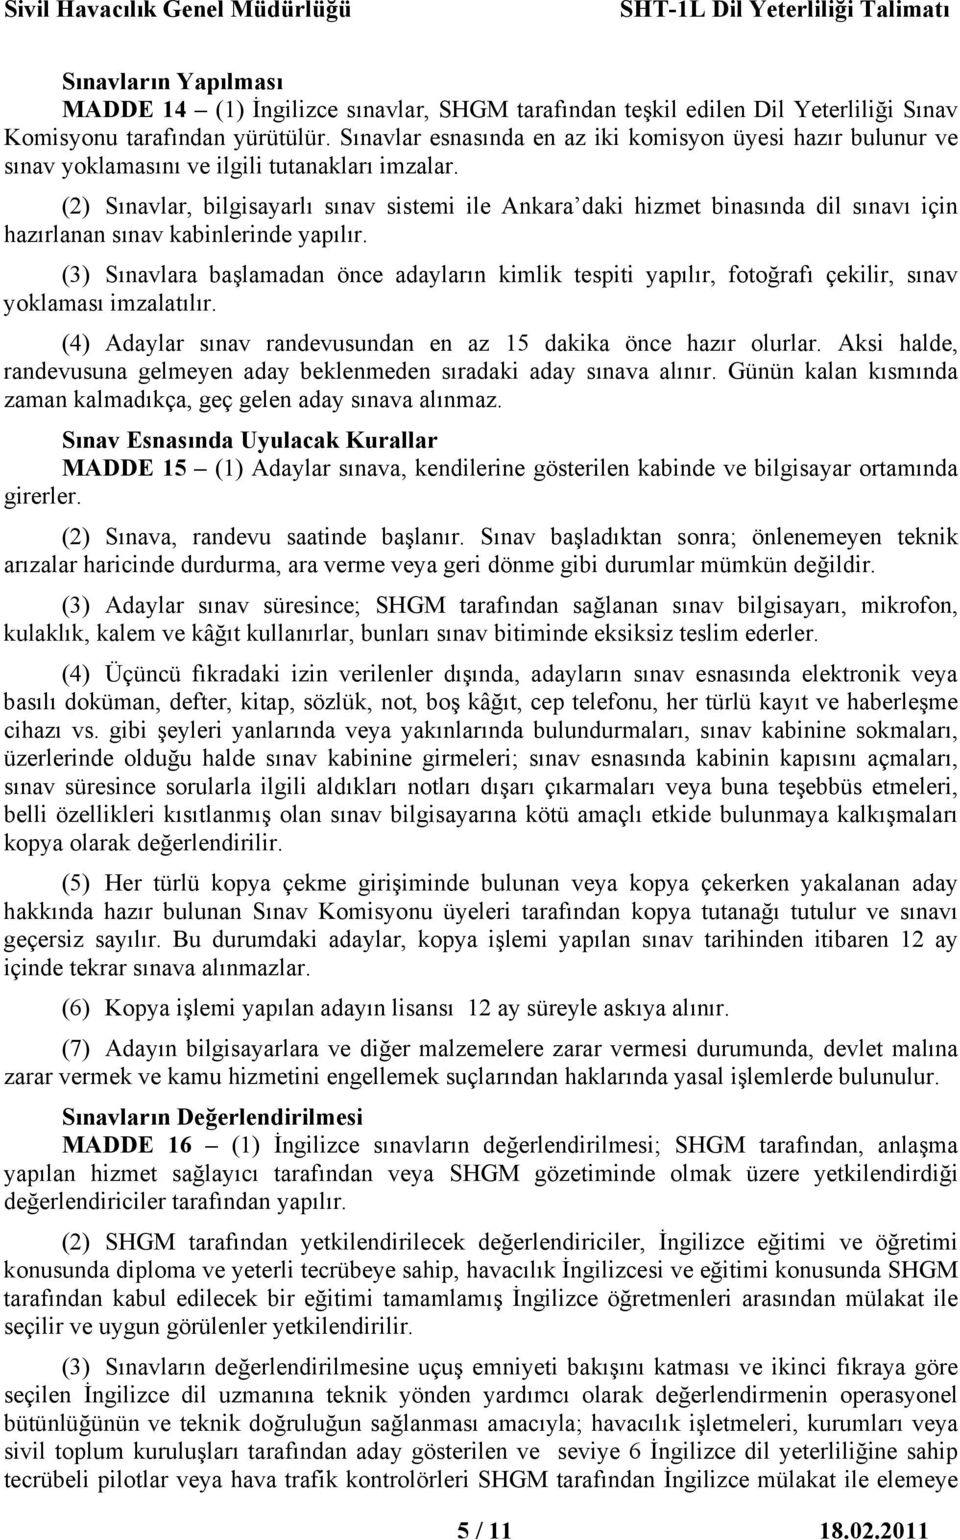 (2) Sınavlar, bilgisayarlı sınav sistemi ile Ankara daki hizmet binasında dil sınavı için hazırlanan sınav kabinlerinde yapılır.